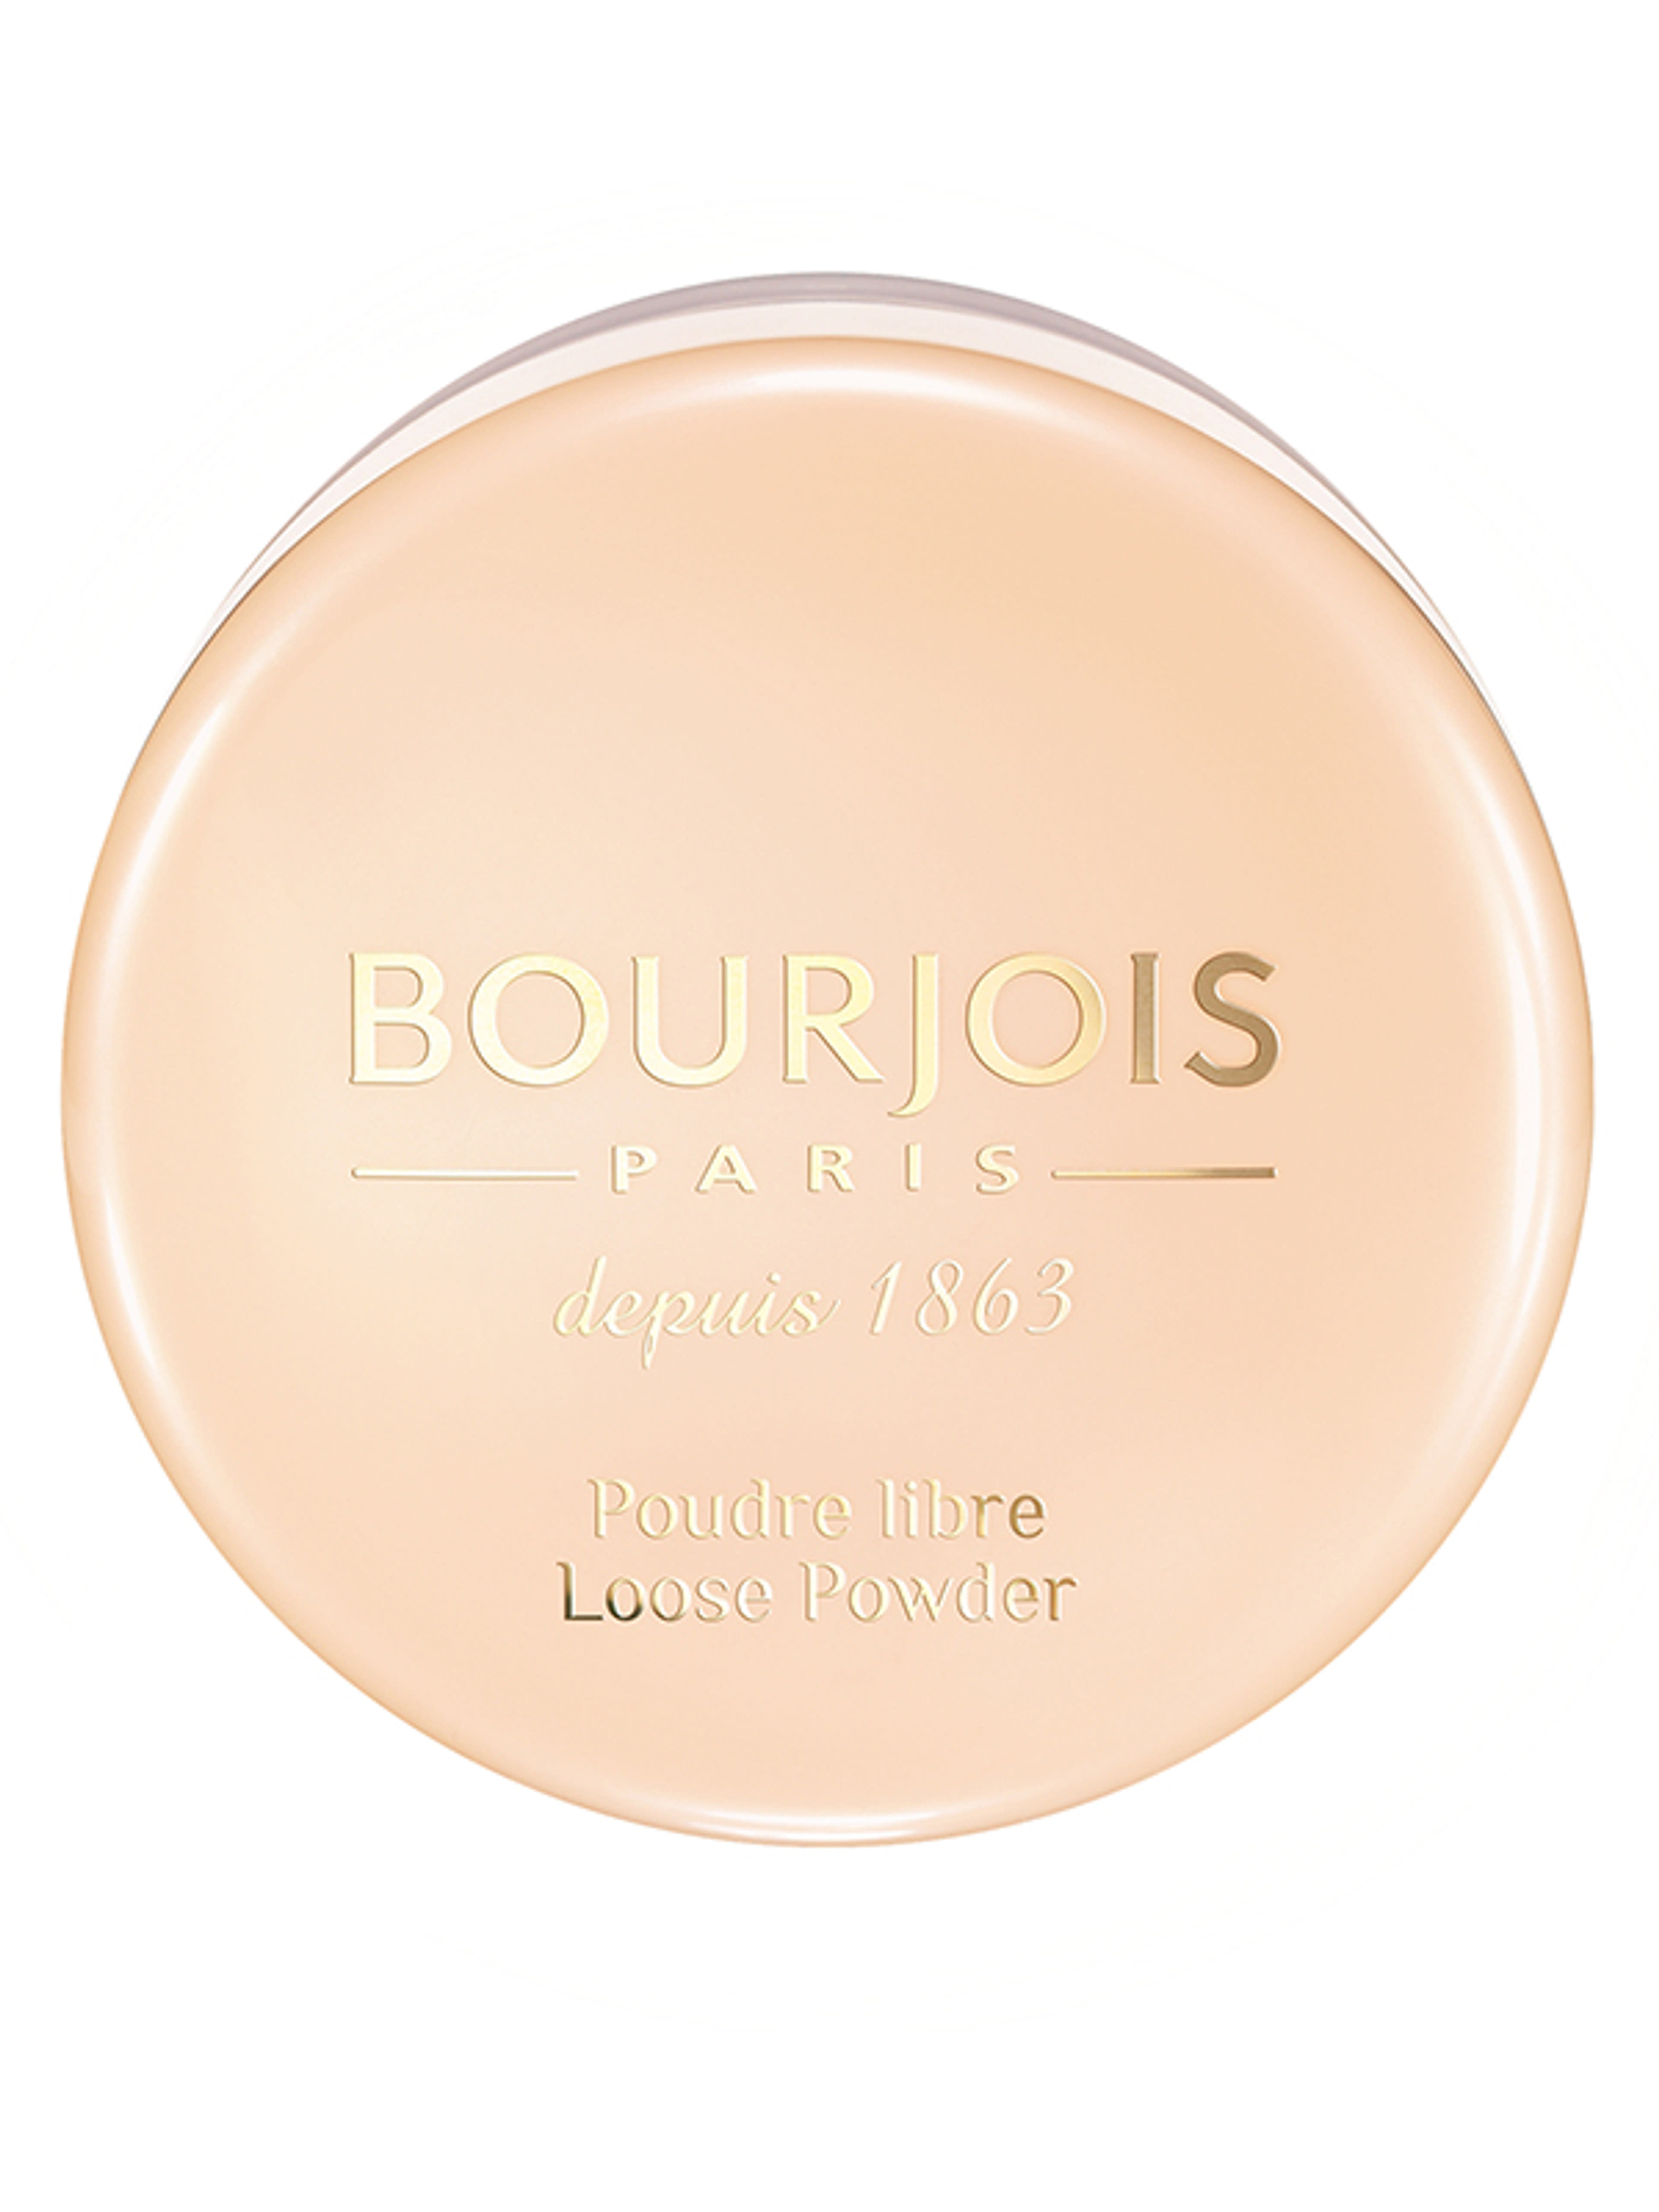 Bourjois Loose Powder porpúder /01 - 1 db